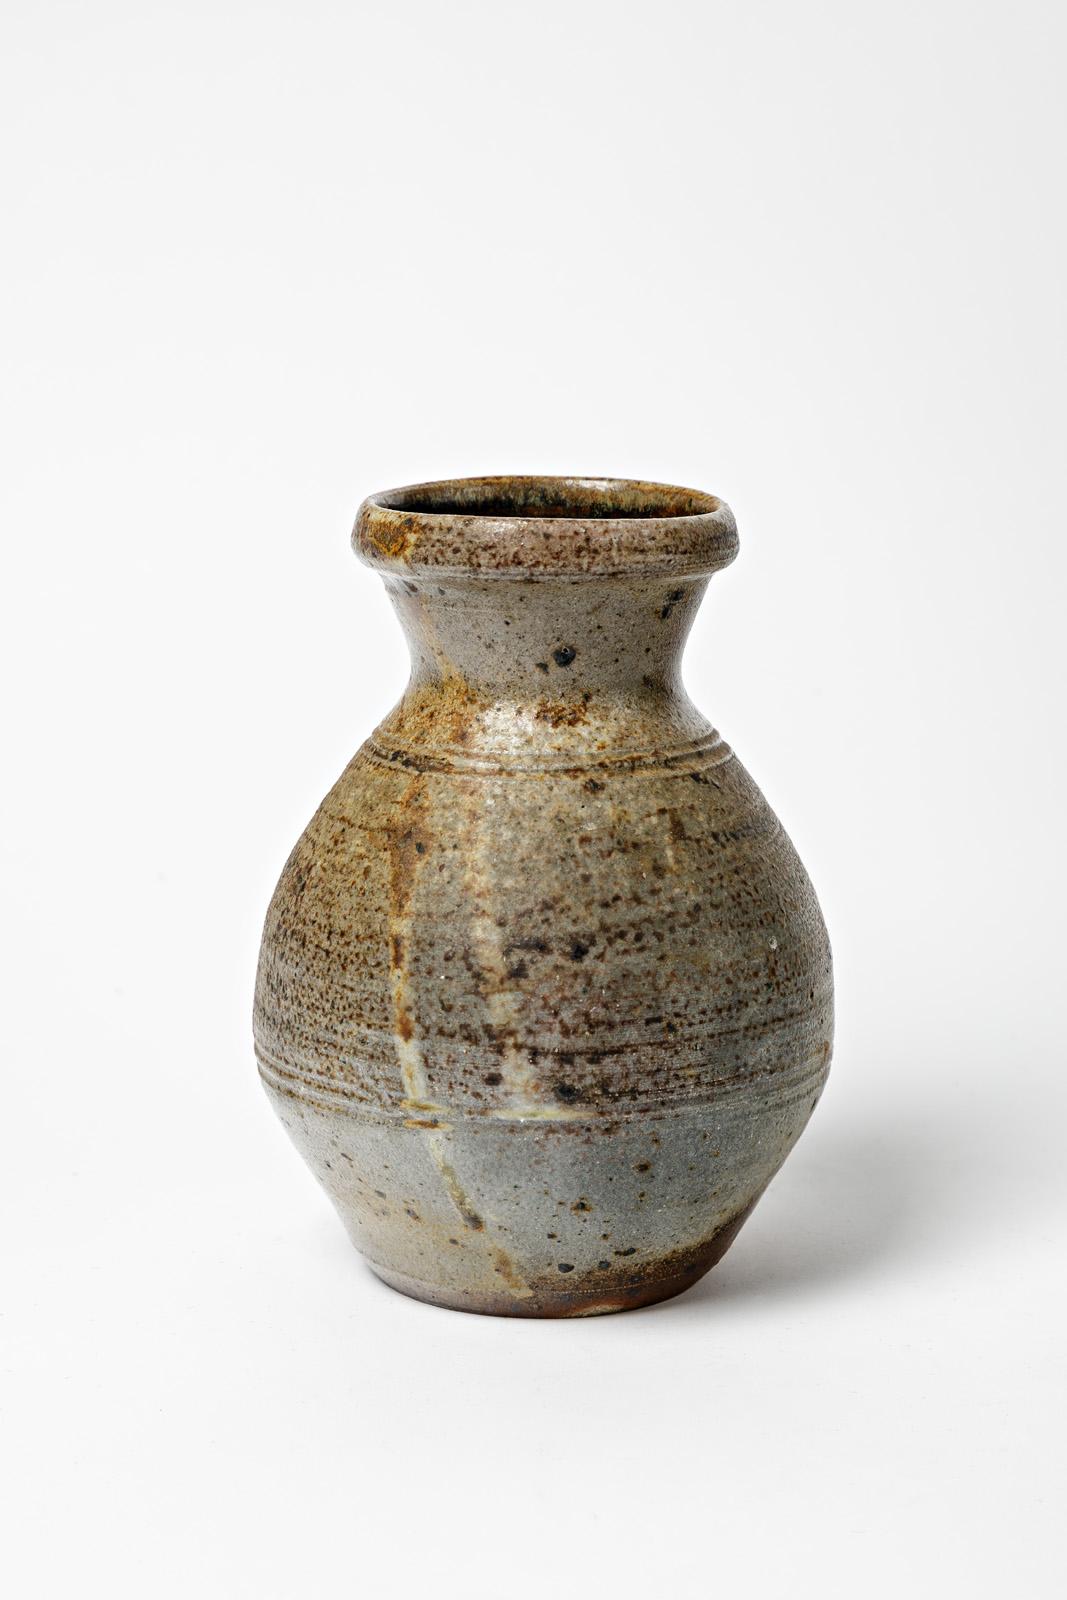 Steen Kepp - La Borne

Stoneware ceramic vase, woodfiring ceramic

Original perfect condition

Height 19 cm
Large 12 cm.